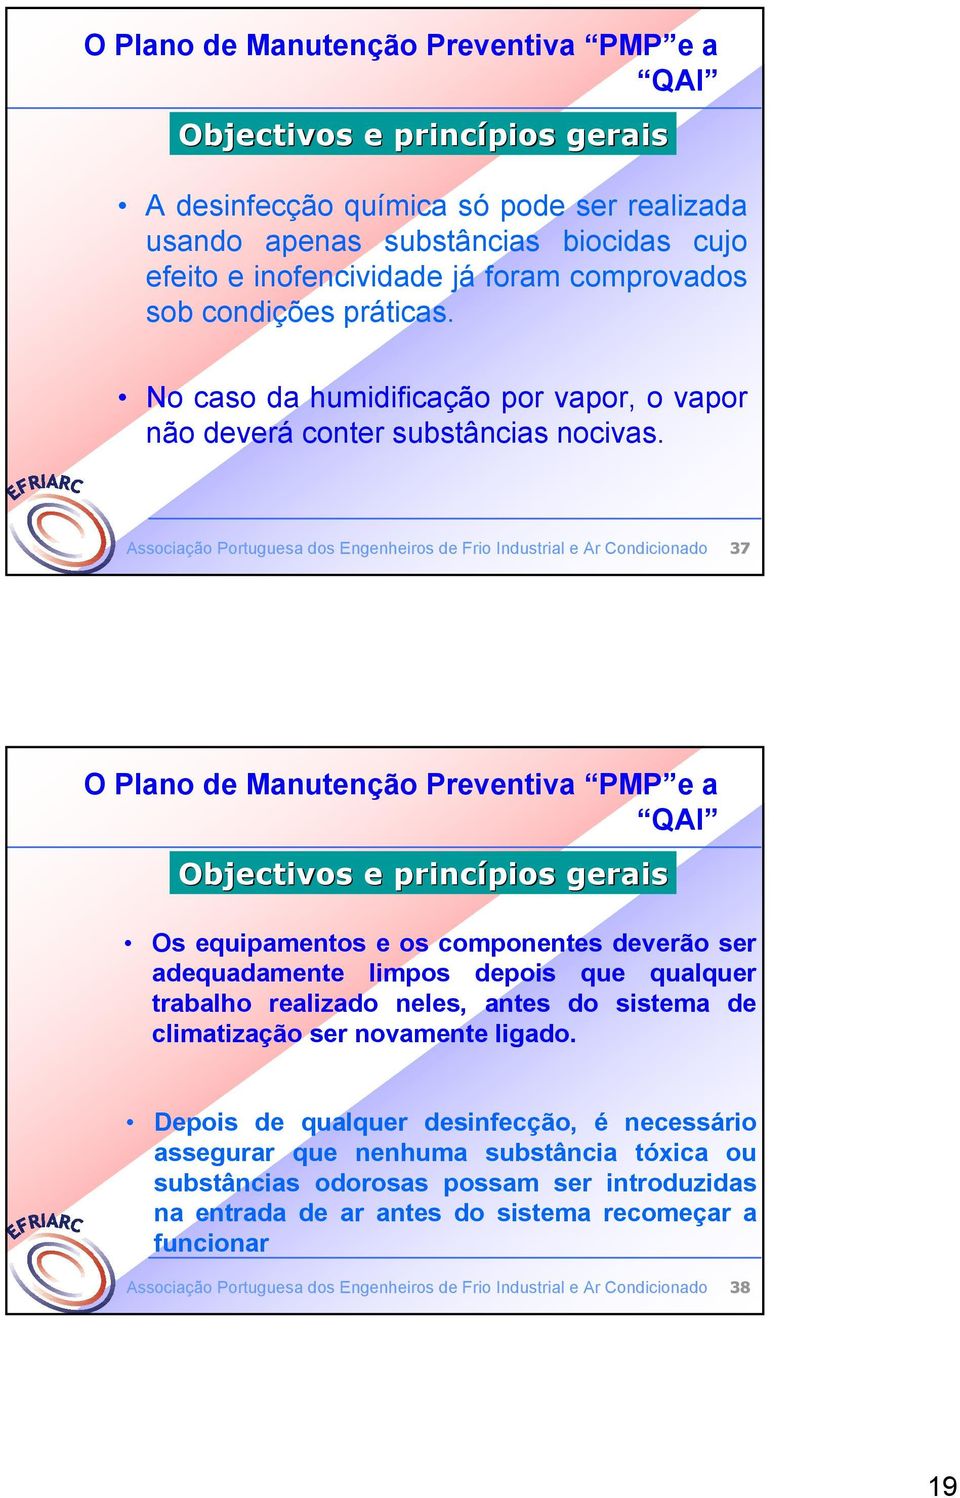 Associação Portuguesa dos Engenheiros de Frio Industrial e Ar Condicionado 37 O Plano de Manutenção Preventiva PMP e a QAI Objectivos e princípios pios gerais Os equipamentos e os componentes deverão